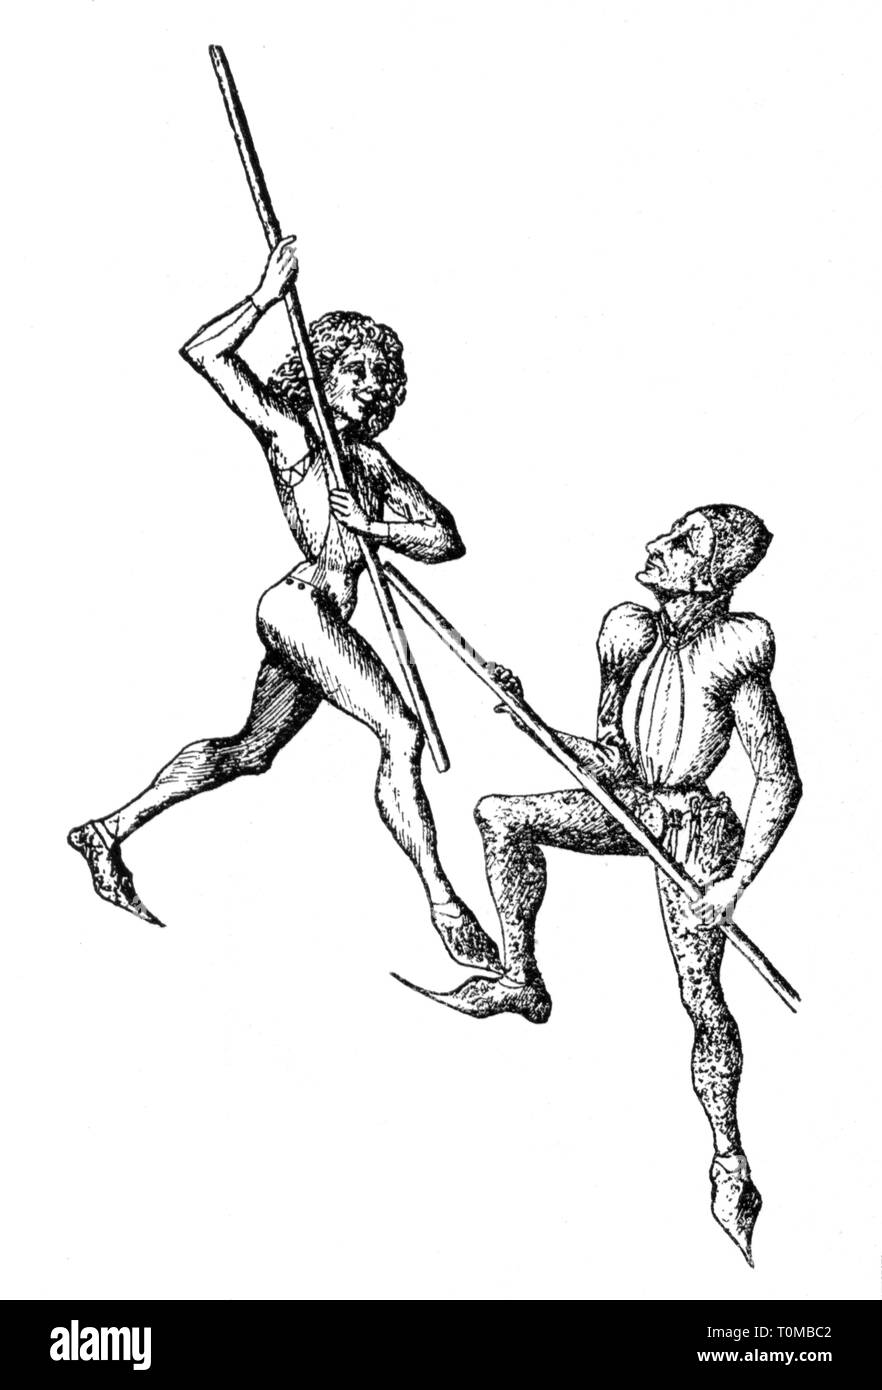 Le sport, l'escrime, l'escrime, stick couple de tireurs de l'exercice, gravure sur cuivre, des jeux de cartes du maître E. S., Allemagne, vers 1450, l'artiste n'a pas d'auteur pour être effacé Banque D'Images